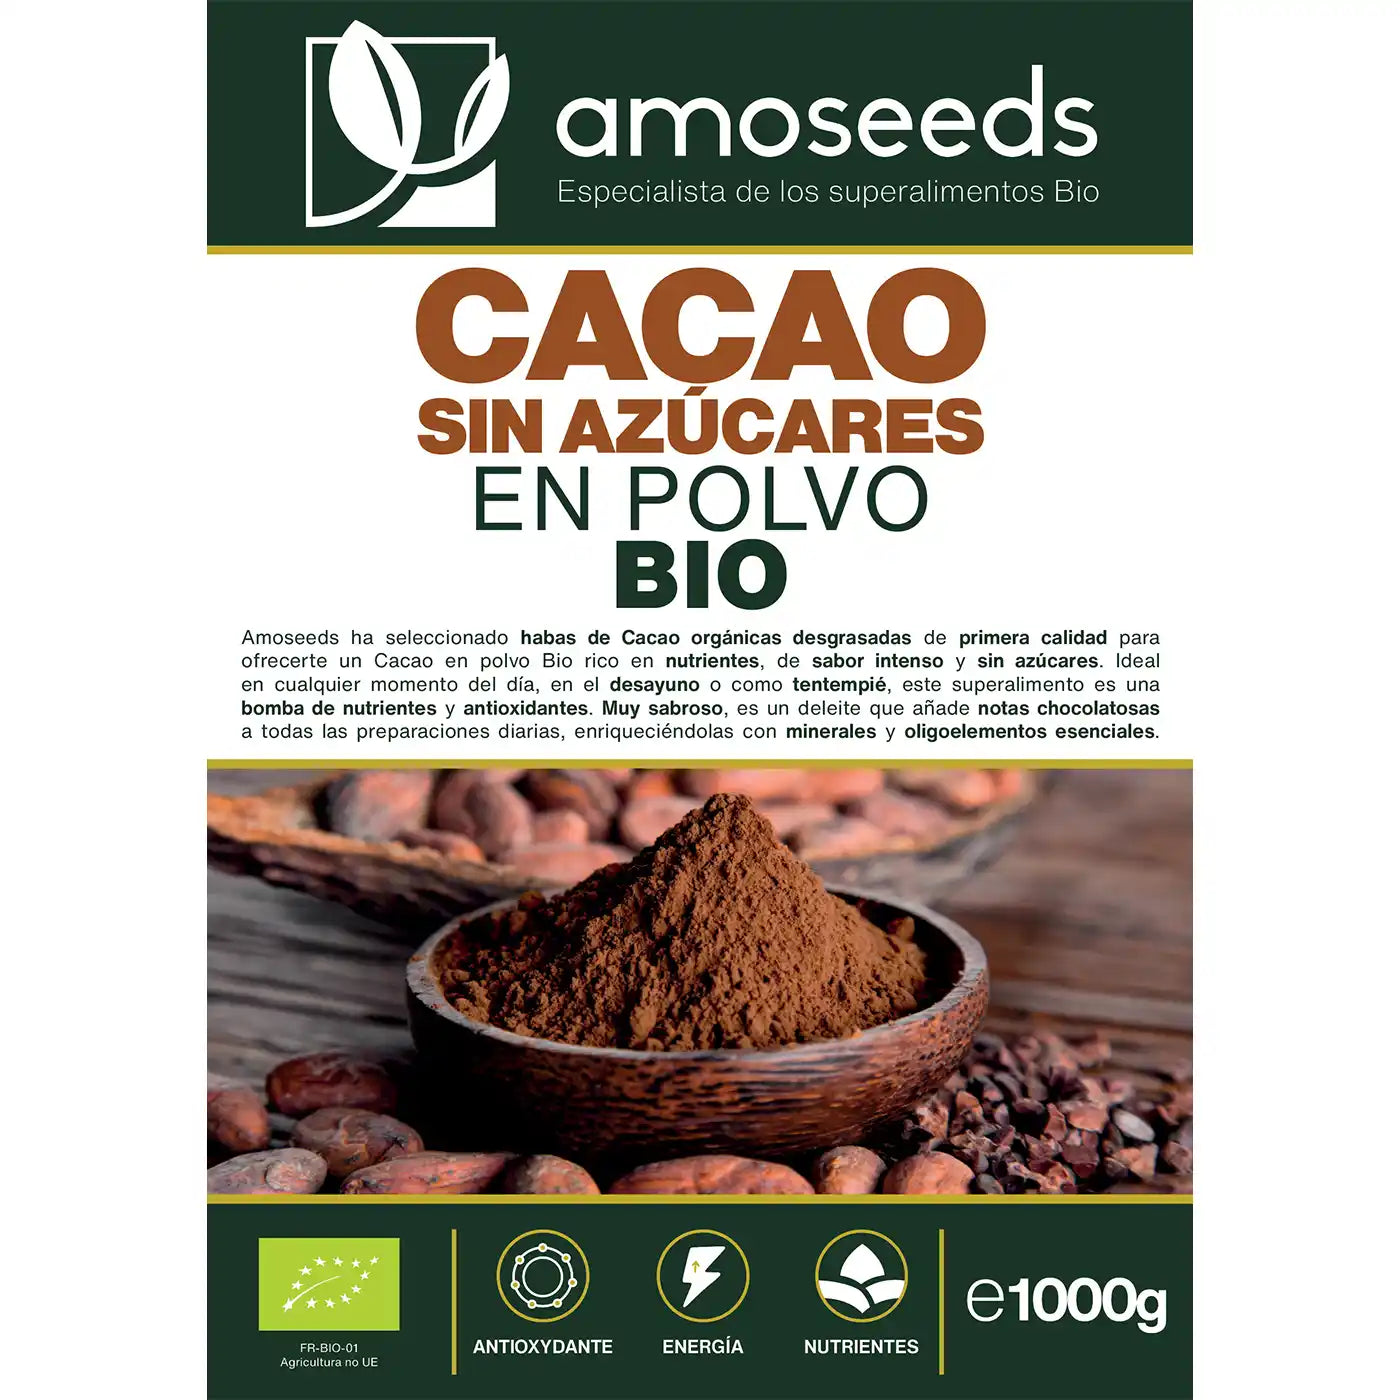 Cacao bio sin azucares amoseeds especialista de los superalimentos bio